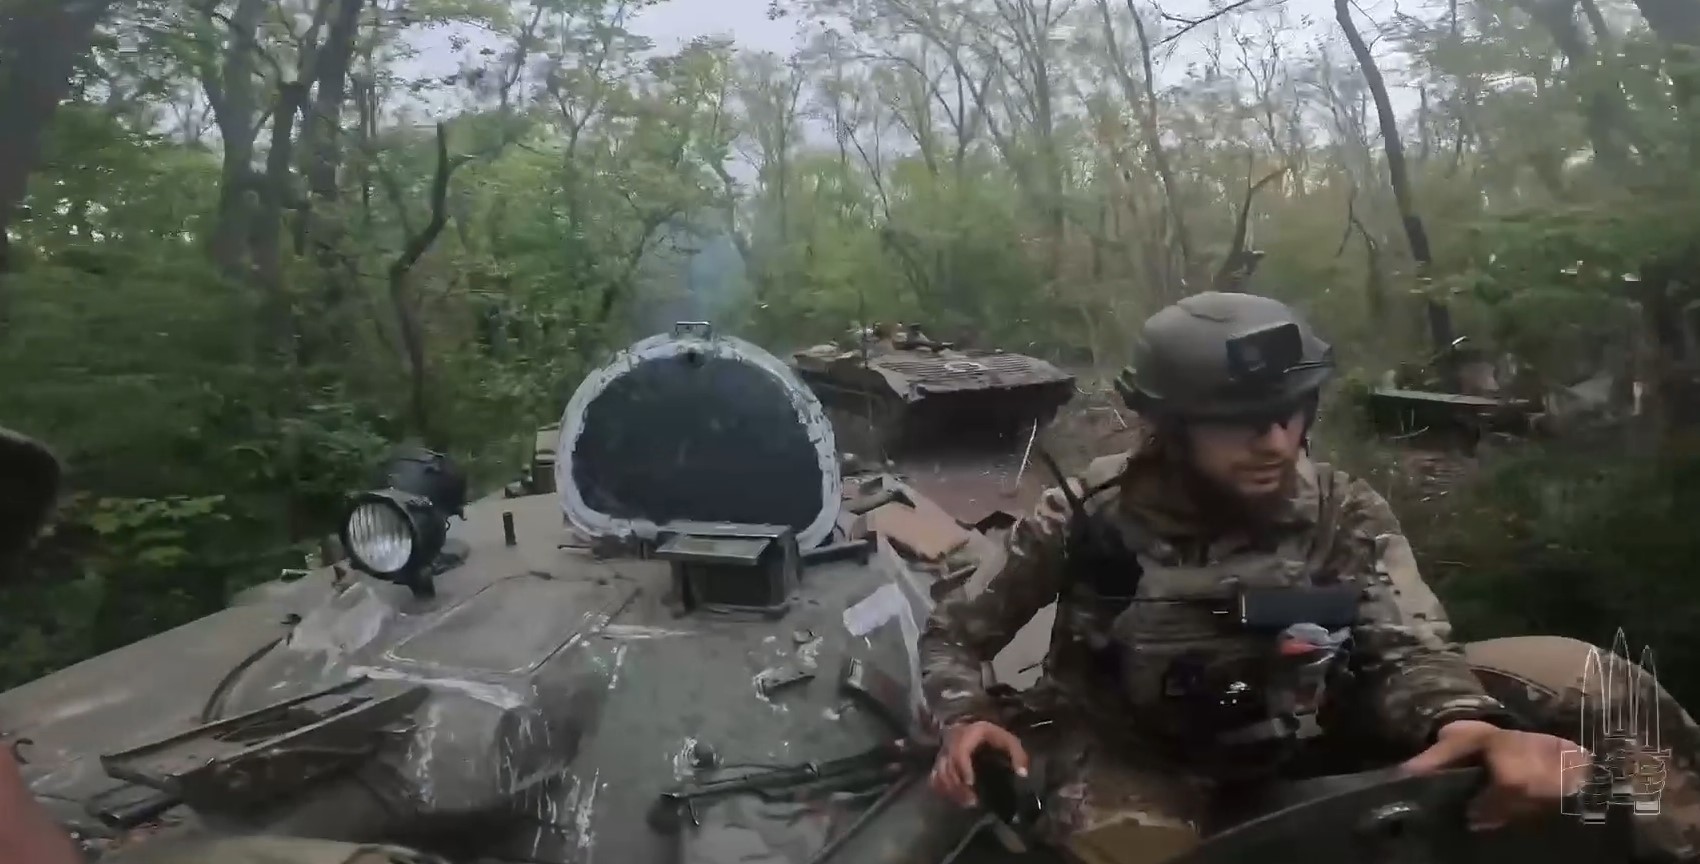 Захоплені БМП російських військових біля річки Сіверський Донець. Травень 2022. Кадр з відео "Гонор"